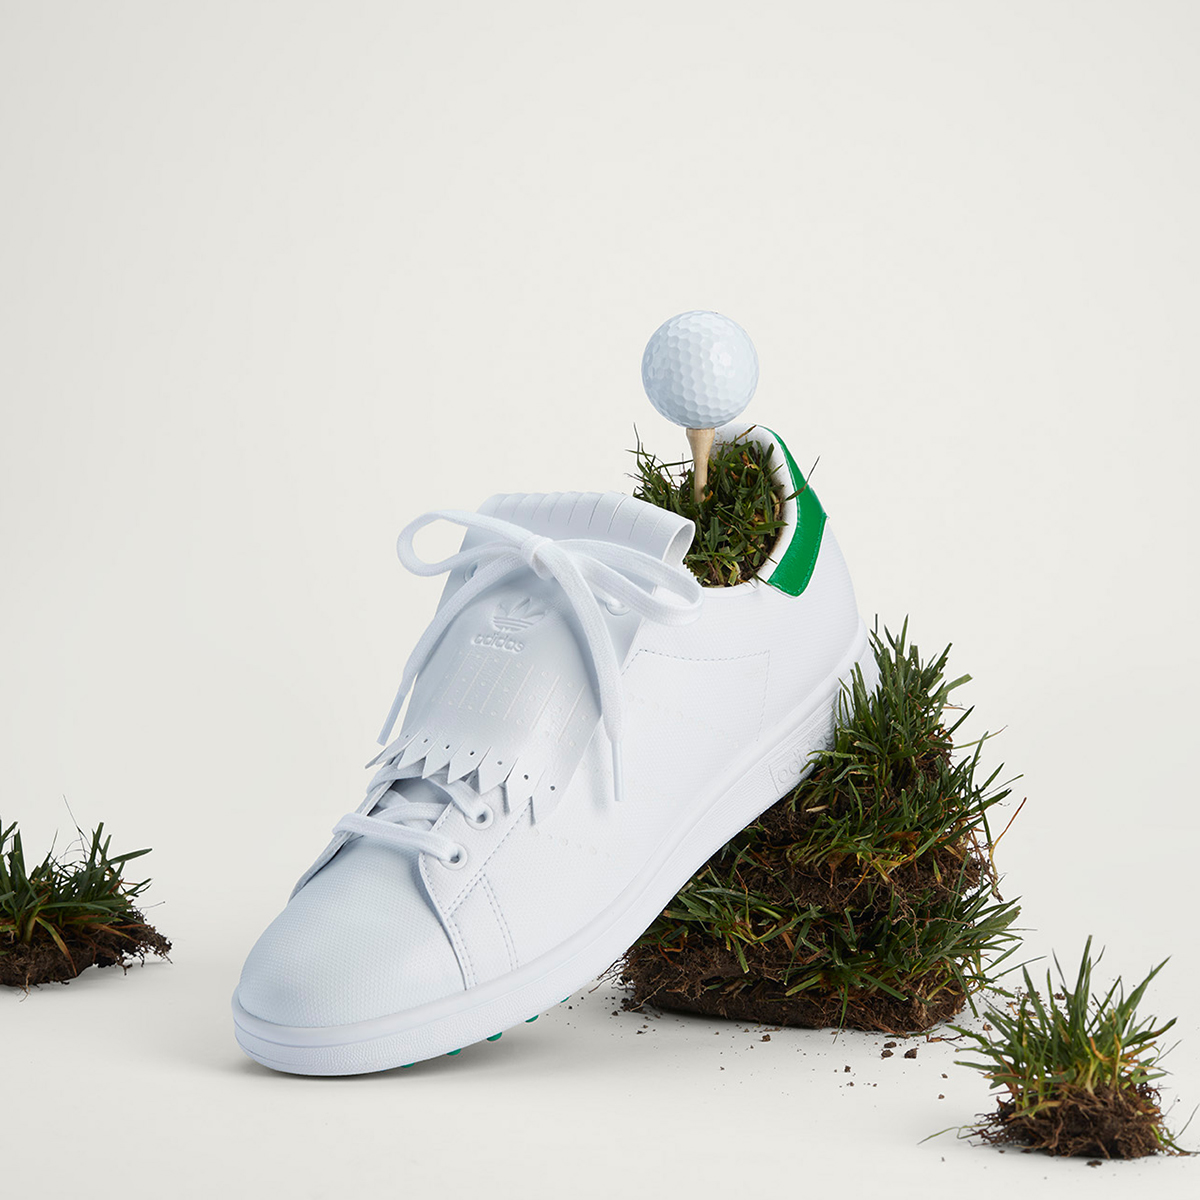 Mặt trên PRIMEGREEN được làm từ vật liệu tái chế hiệu suất cao như một phần trong sứ mệnh LOẠI BỎ RÁC THẢI NHỰA của adidas